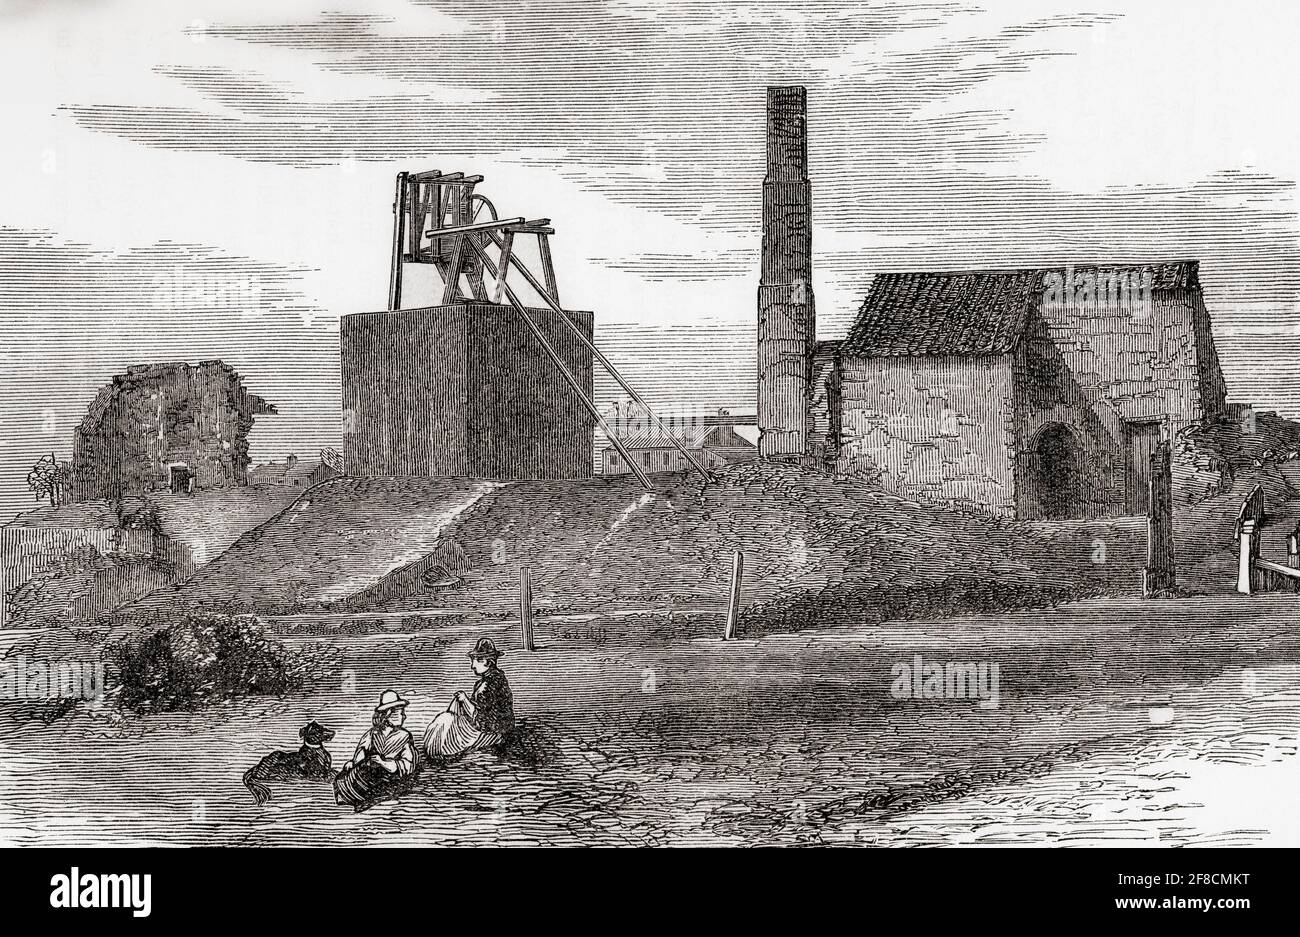 Killingworth Colliery, Newcastle upon Tyne, North Tyneside, England, hier die hohe Grube. George Stephenson, der in der Zeche einsetzte, baute hier seine erste Lokomotive Blücher. Von Great Engineers, veröffentlicht um 1890 Stockfoto